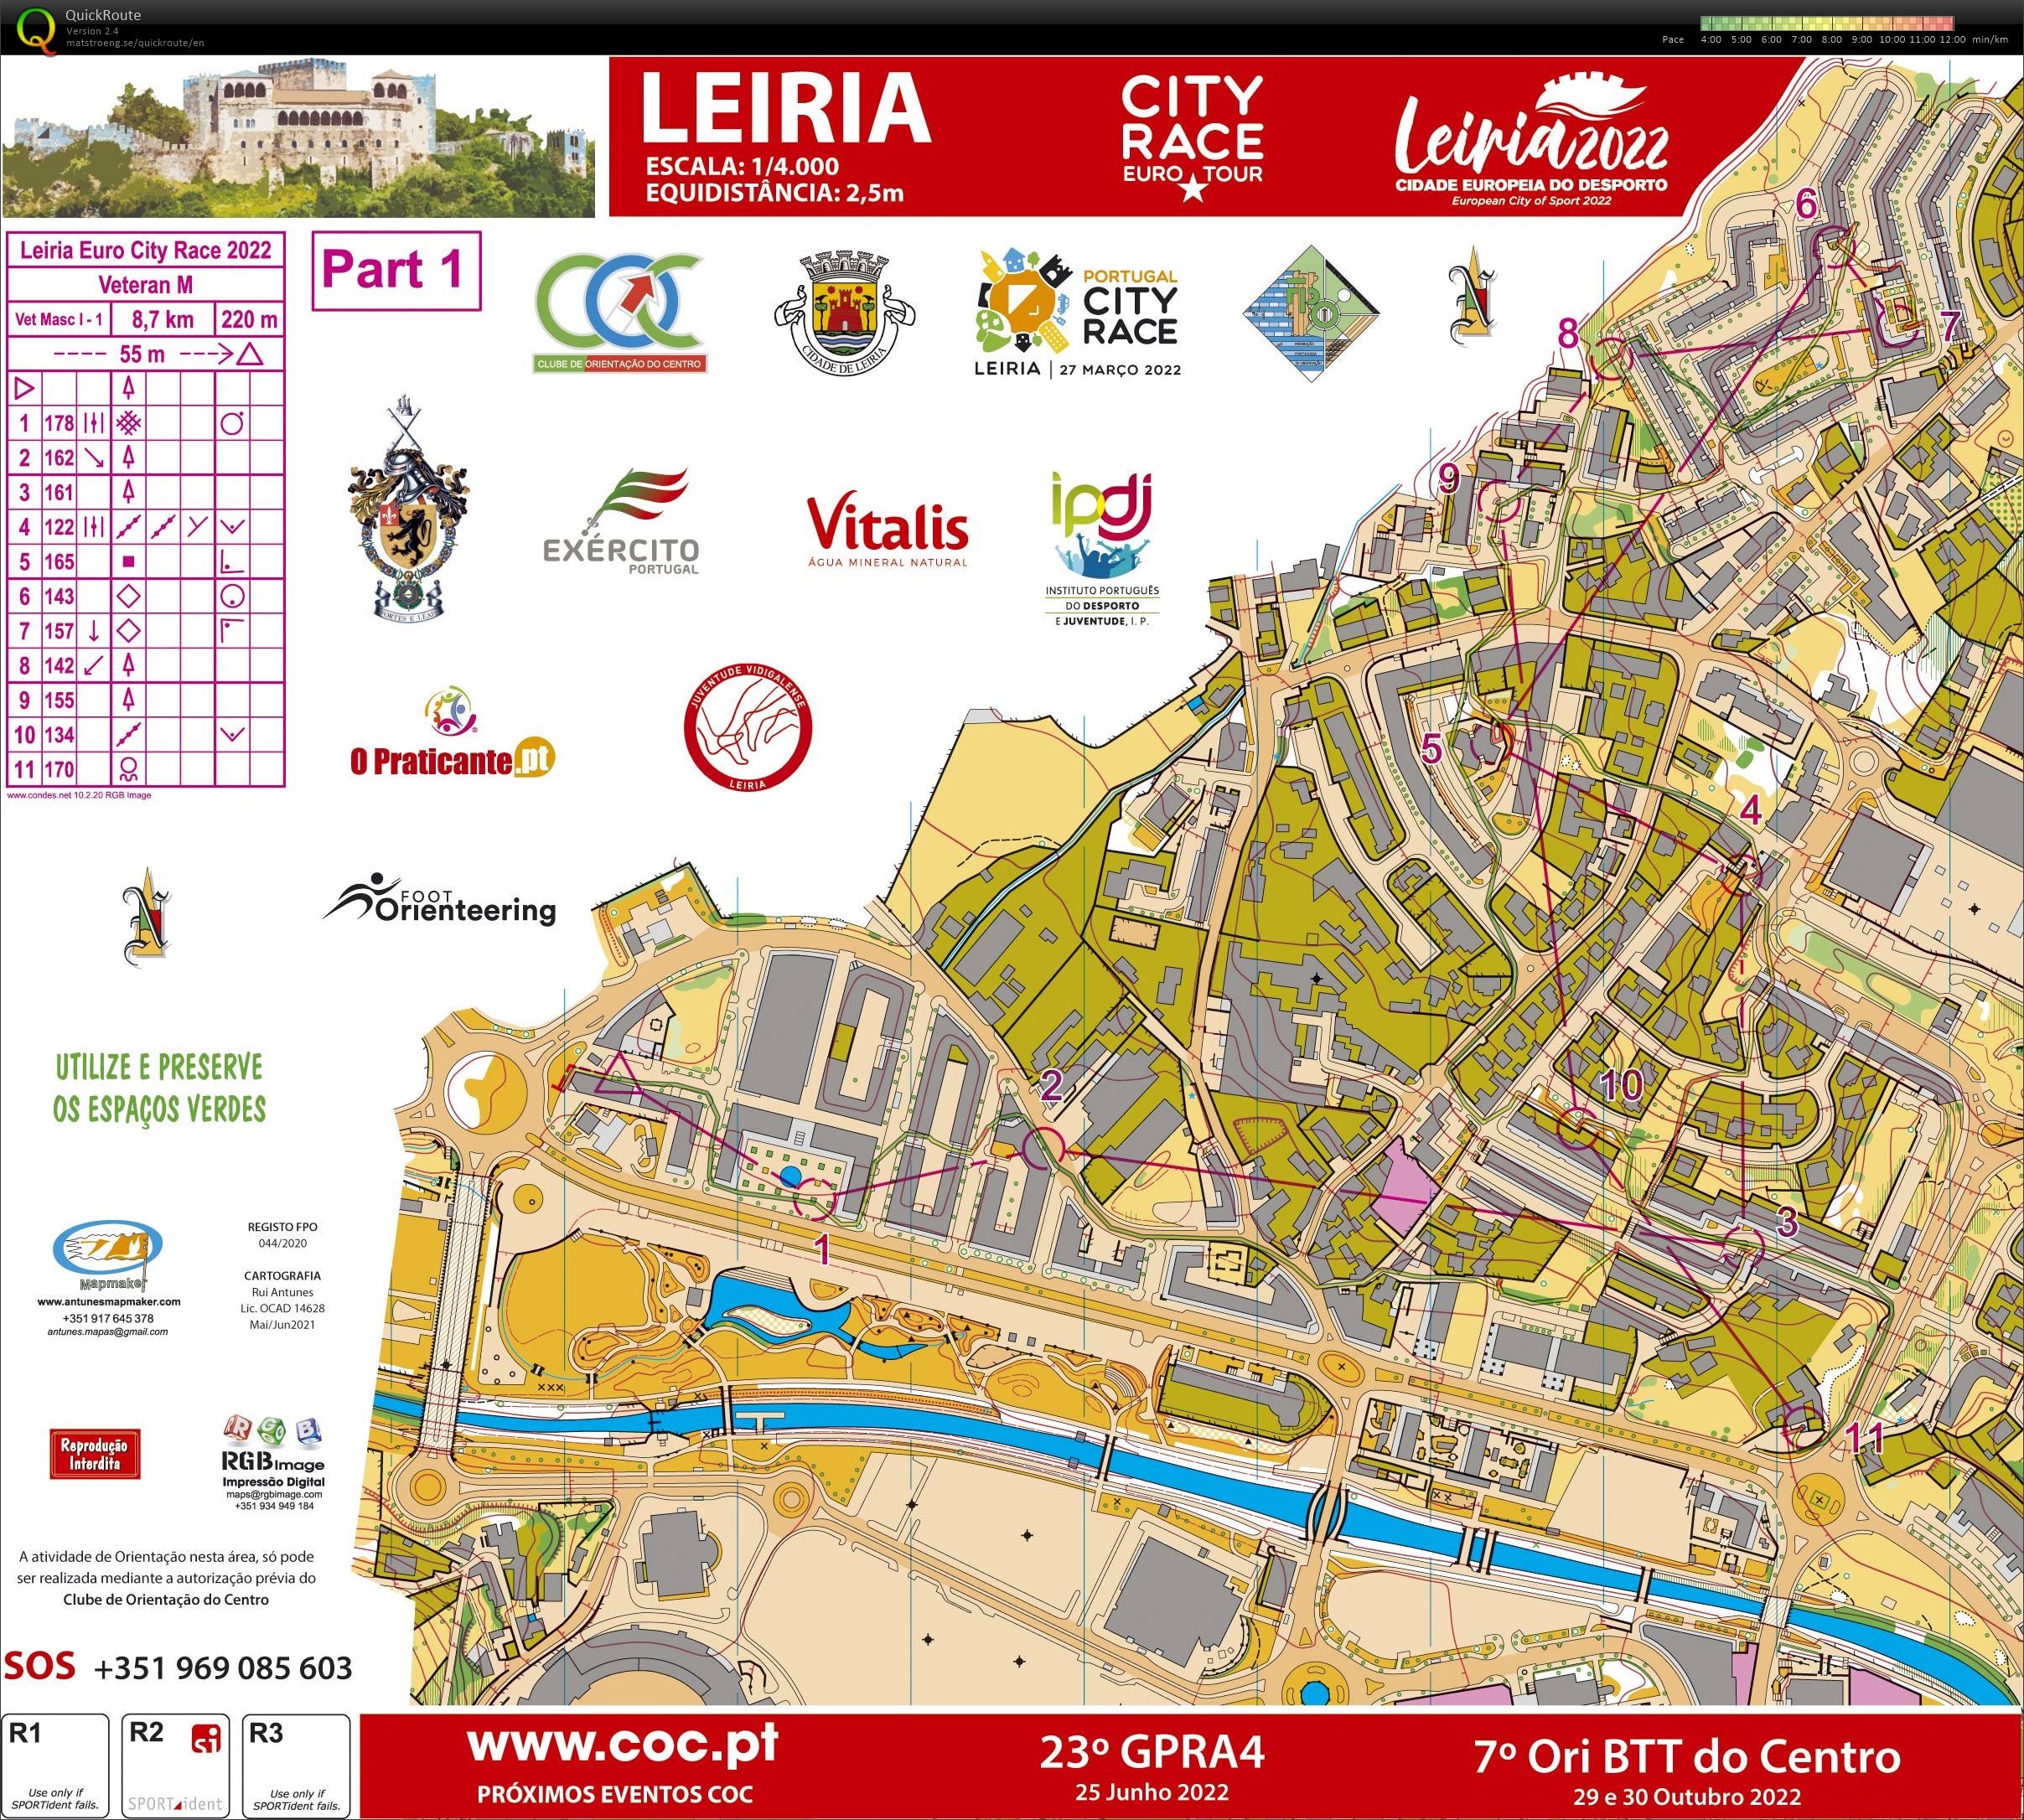 Leiria City Race Euro Tour 2022 (Part1) (27/03/2022)